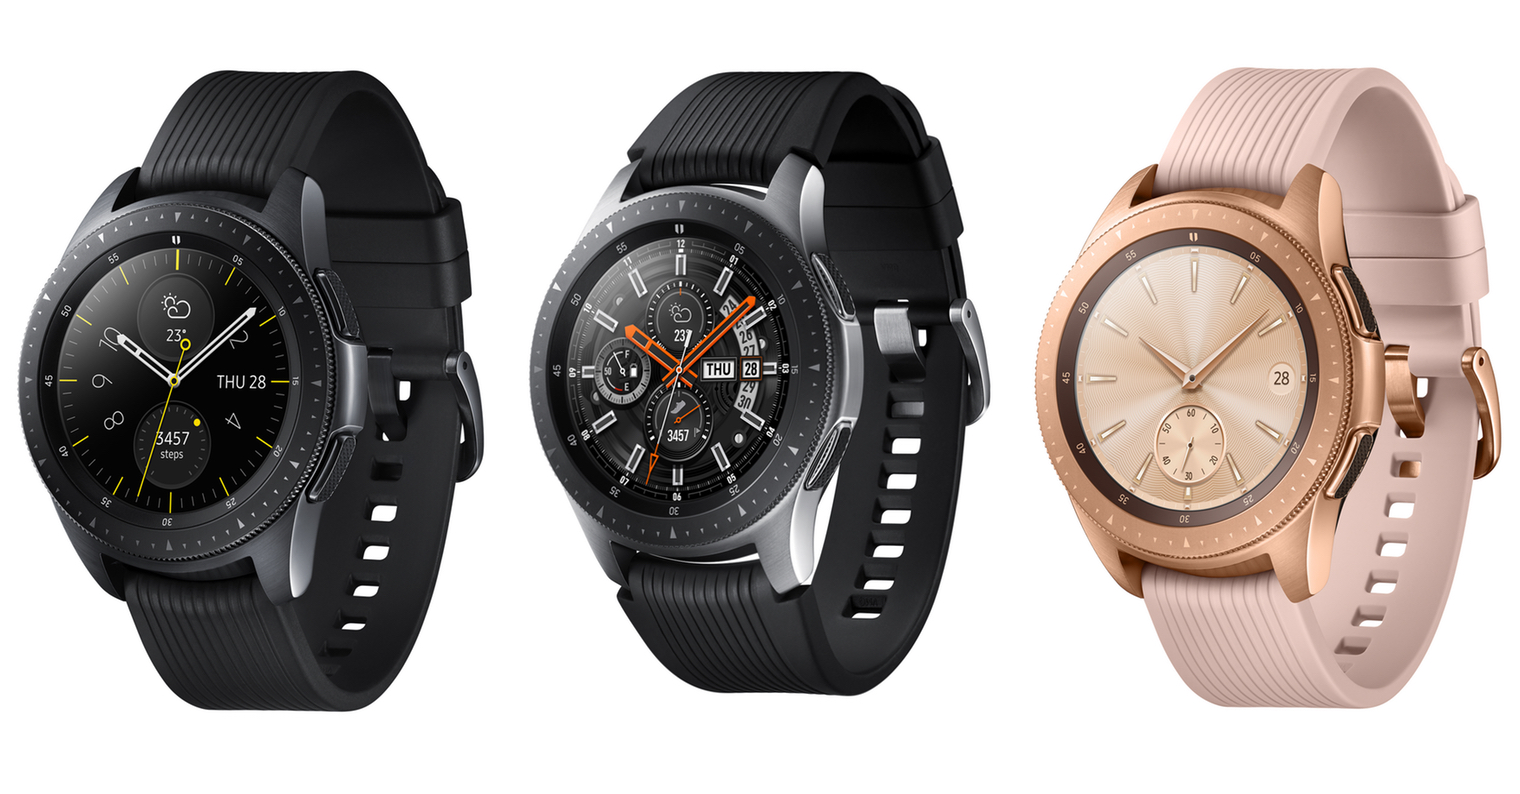 Мужские часы Samsung – как их выбрать Особенности моделей Galaxy Watch и других умных устройств бренда Лучшие наручные смарт-часы для мужчин от Samsung, обзор возможностей, рекомендации